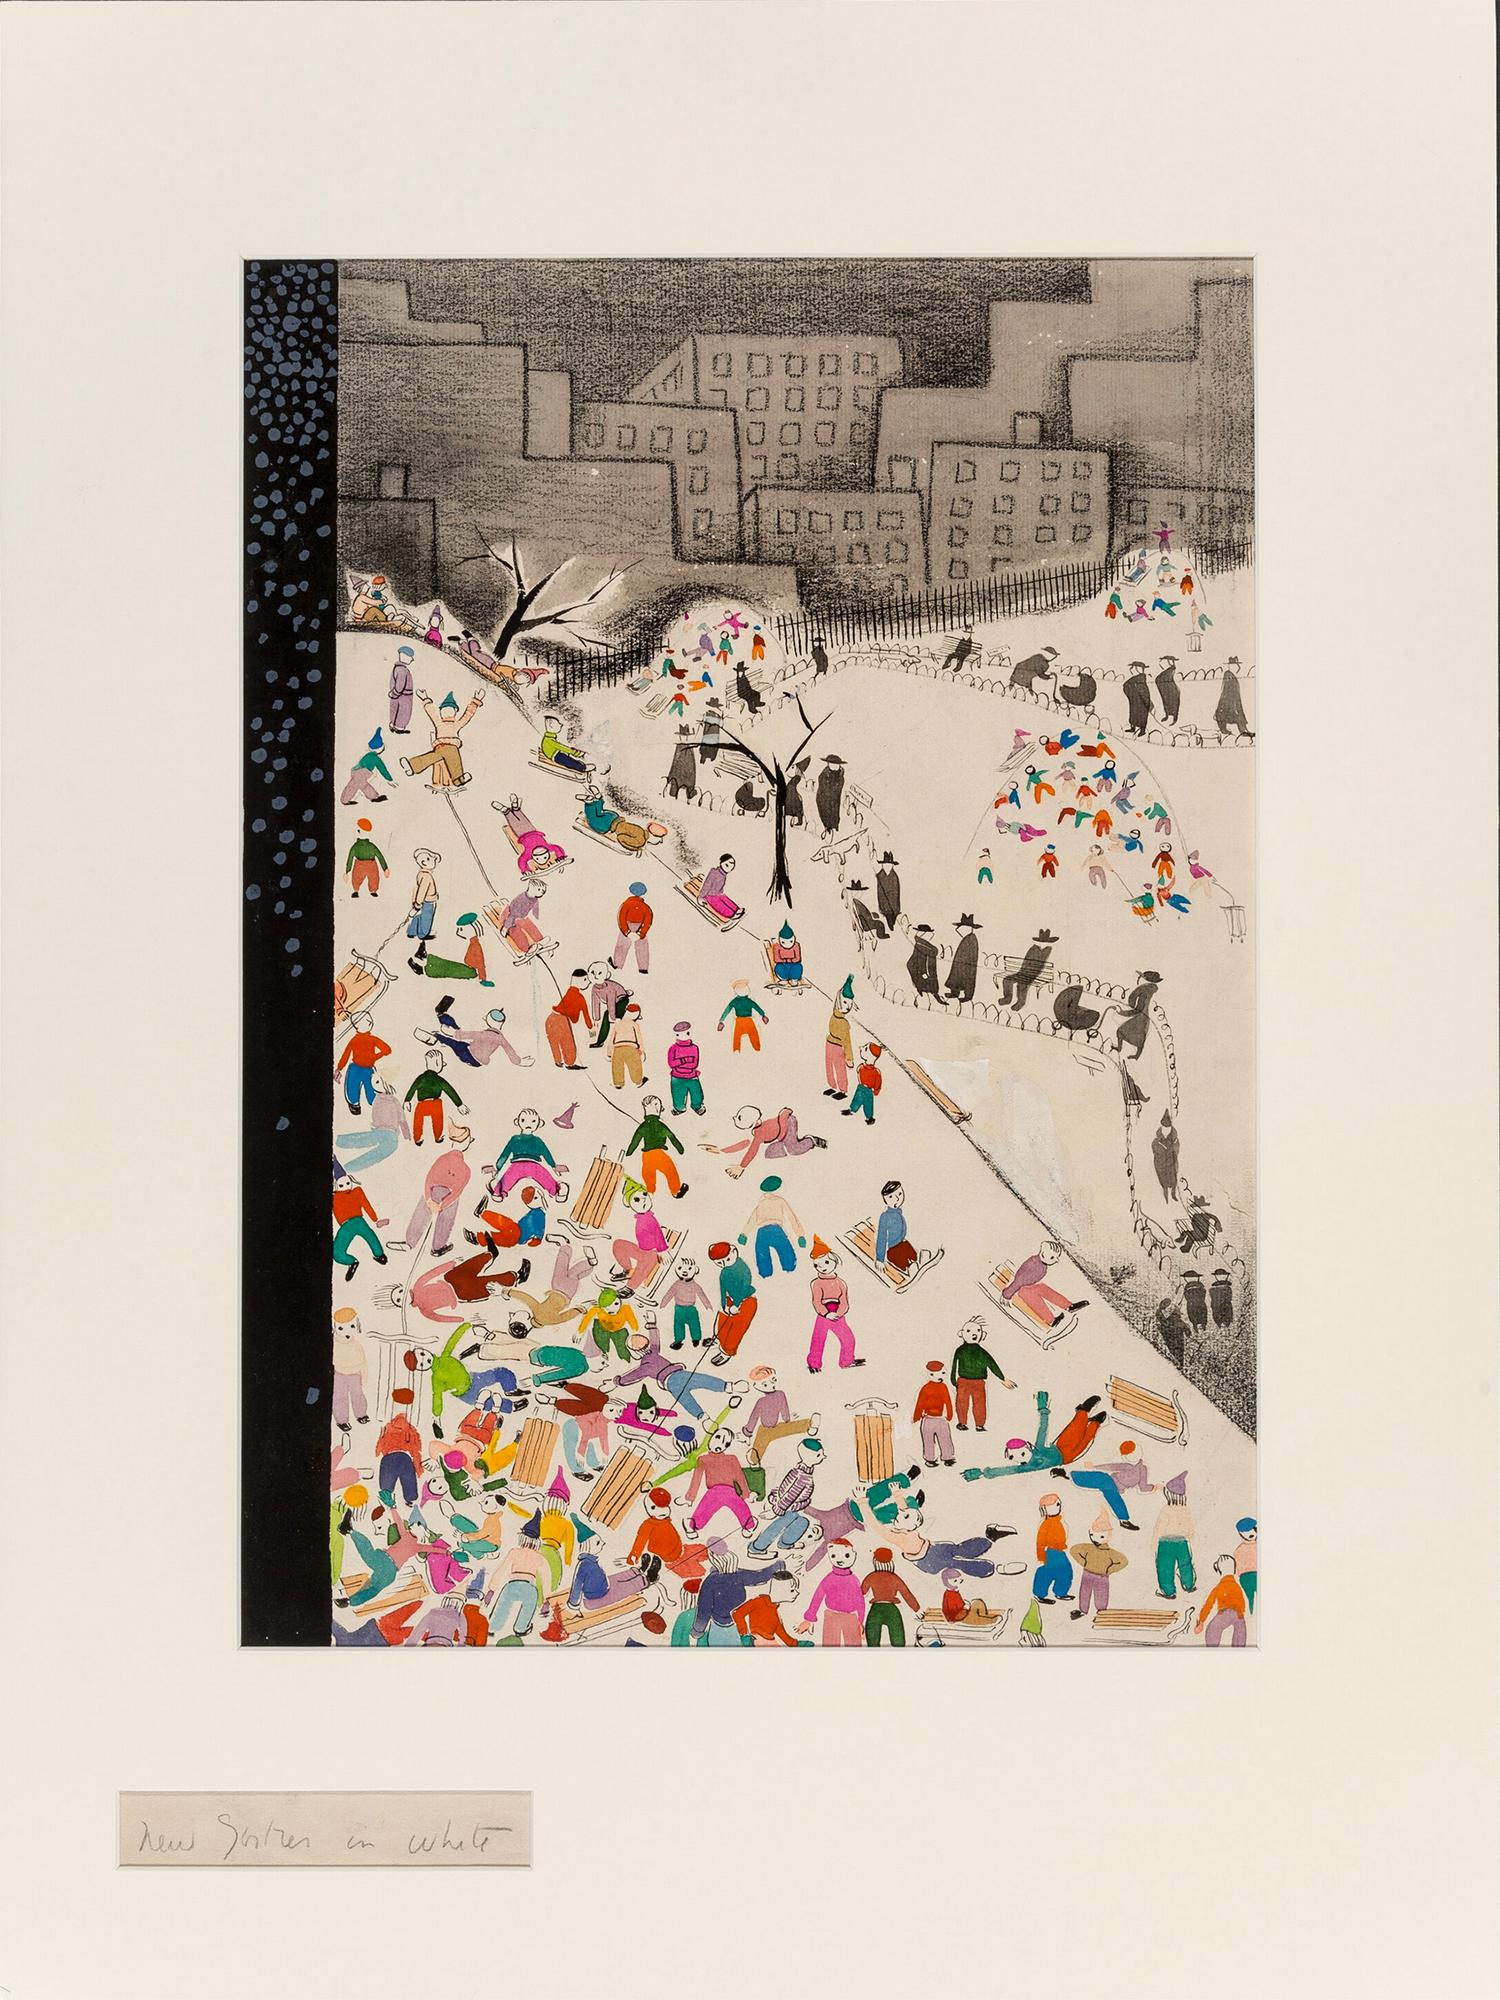 Éclaboussures de neige pour enfants dans le parc central  - Étude de la couverture du New Yorker - Art de Ilonka Karasz